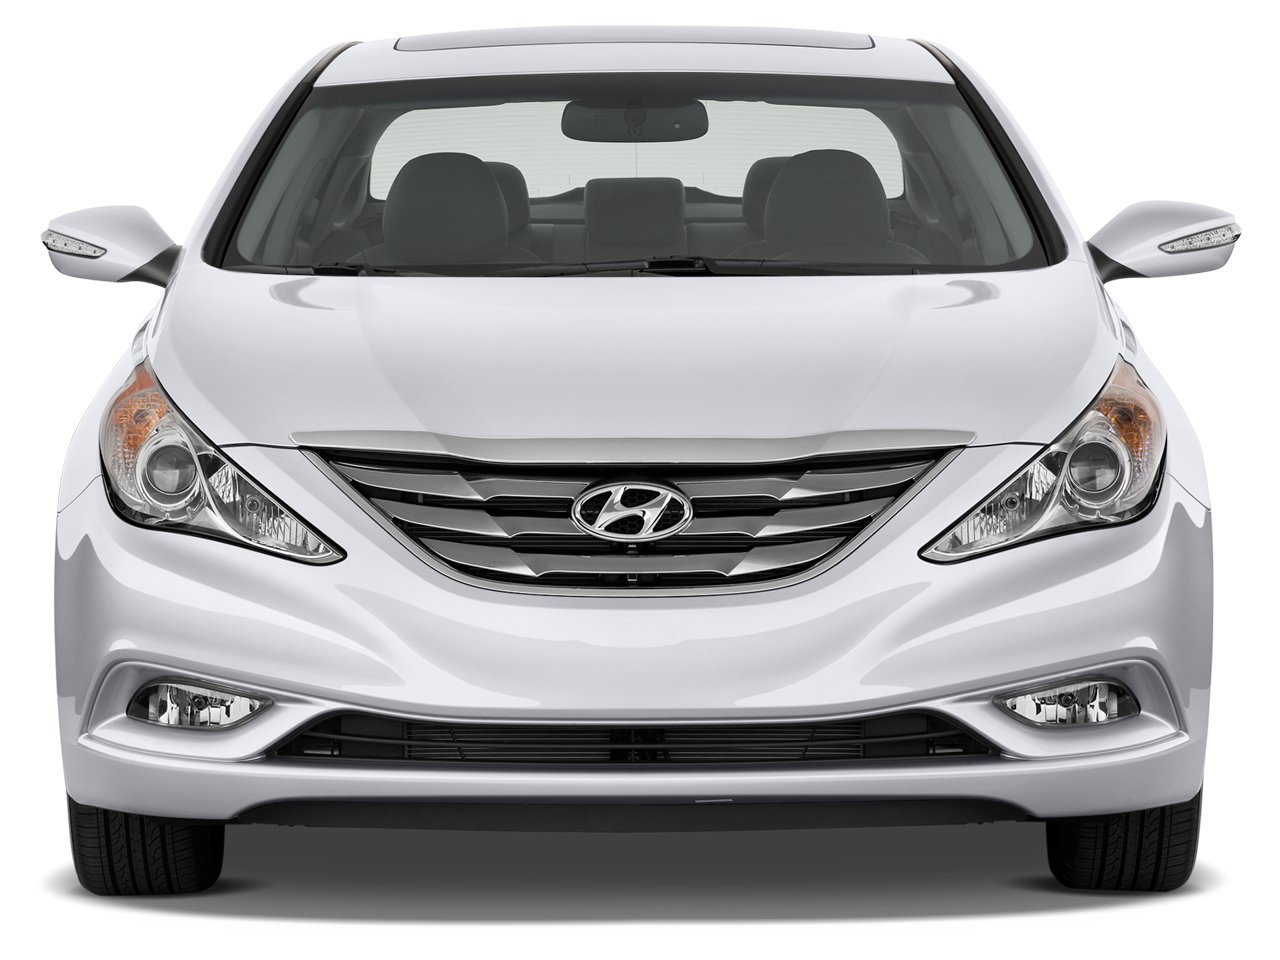 2013 Hyundai Sonata Preview  Car News  Auto123